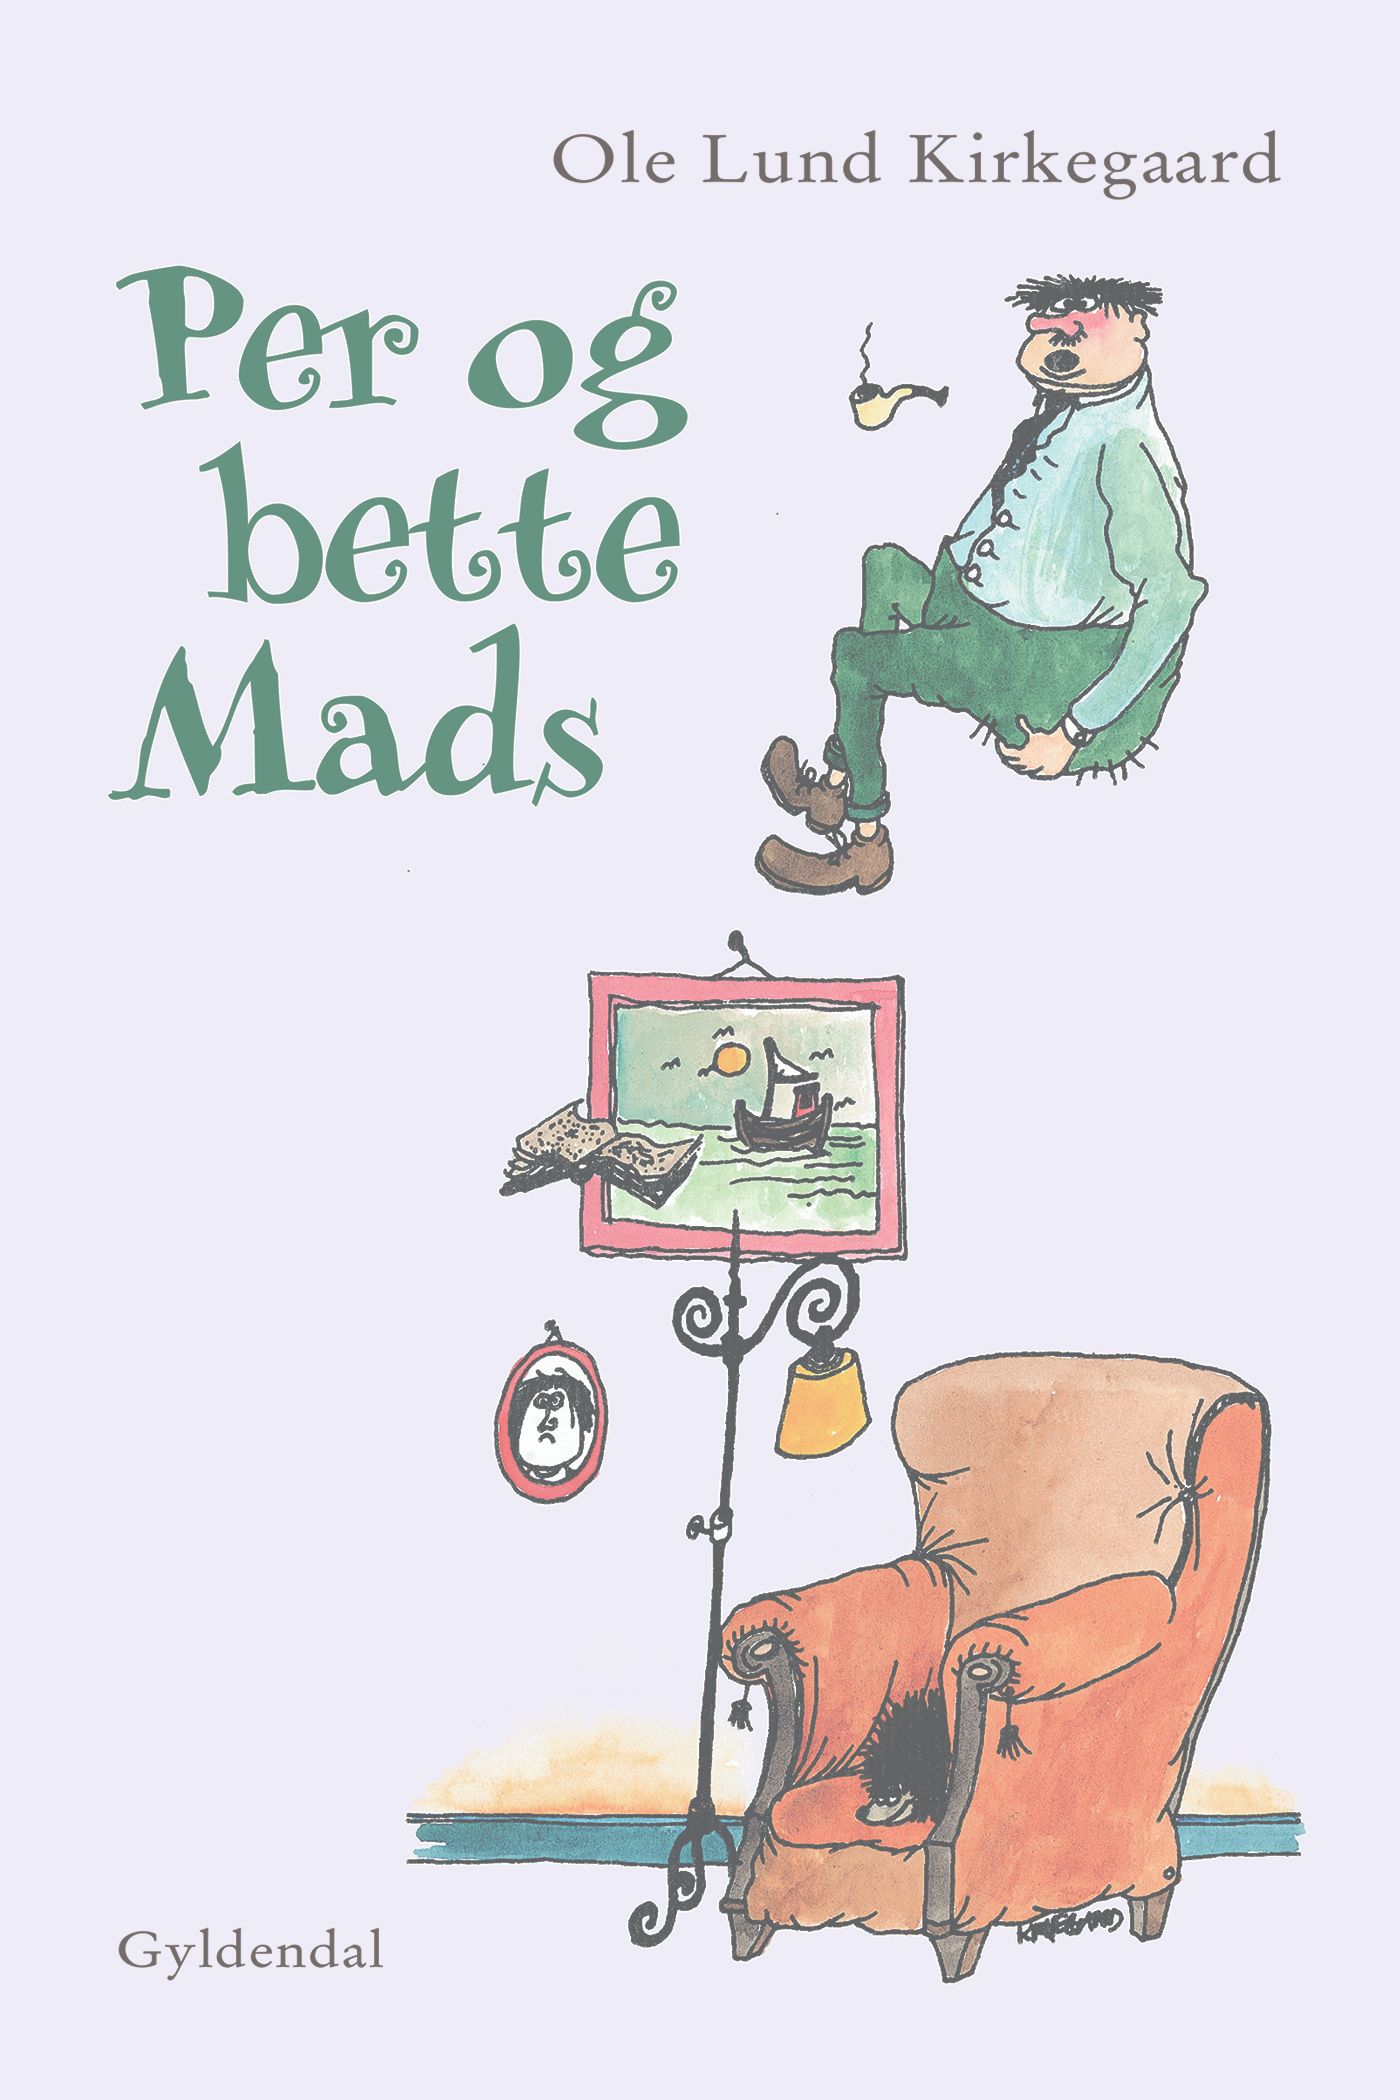 Per og bette Mads, e-bok av Ole Lund Kirkegaard